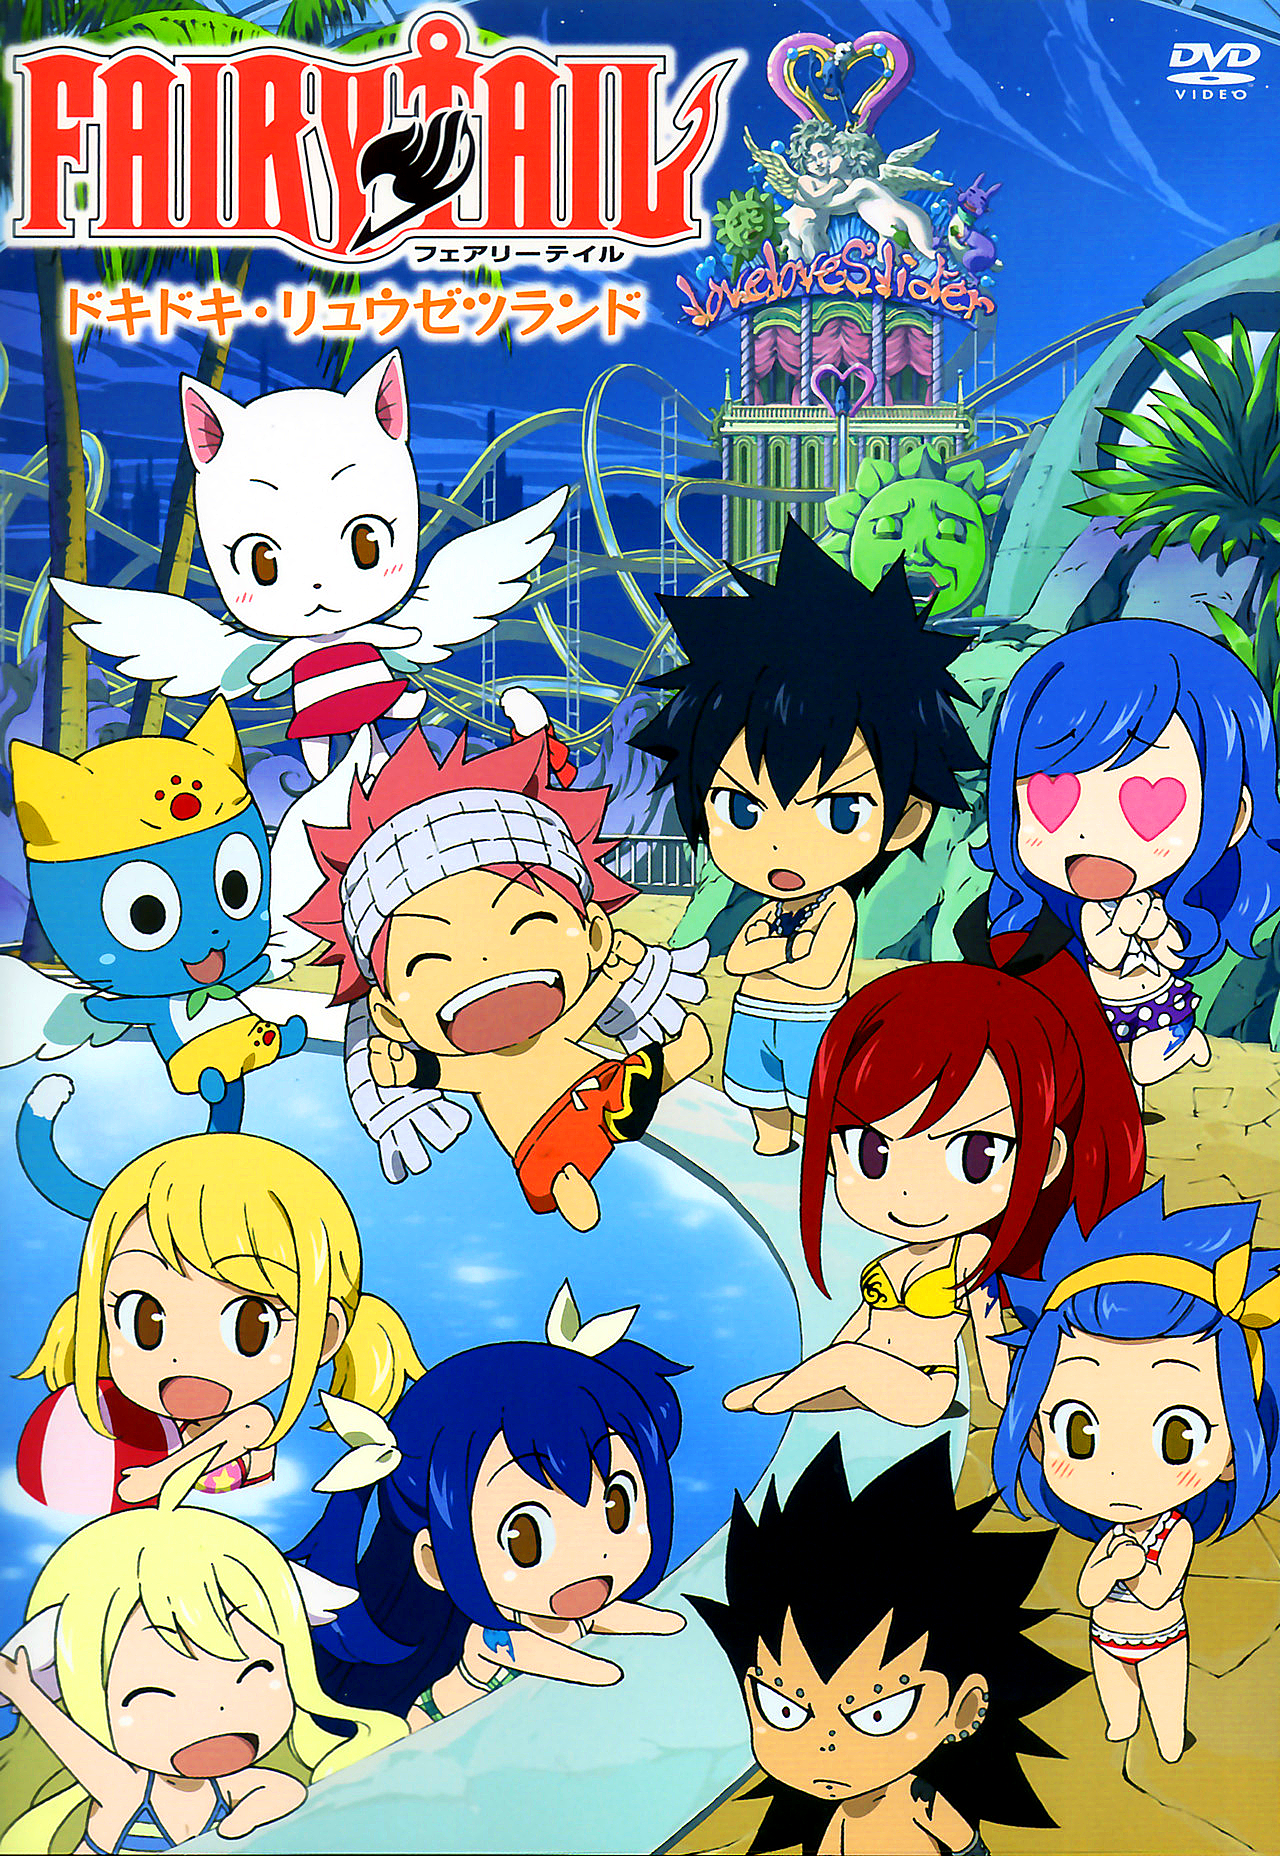 Fairy Tail/Omake Chapter 18 - Anime Bath Scene Wiki